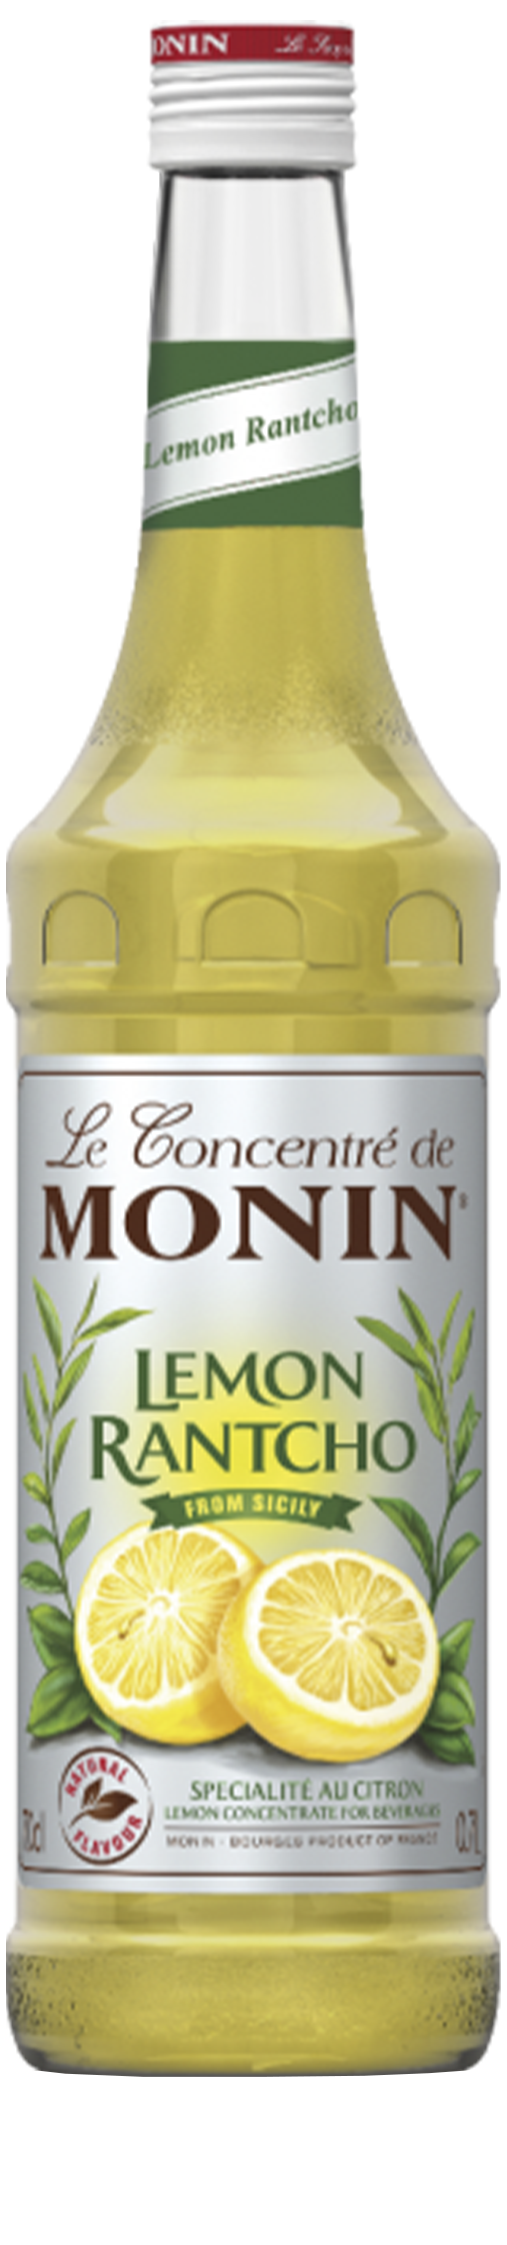 Le Sirop de MONIN Lemon rantcho 0.7L